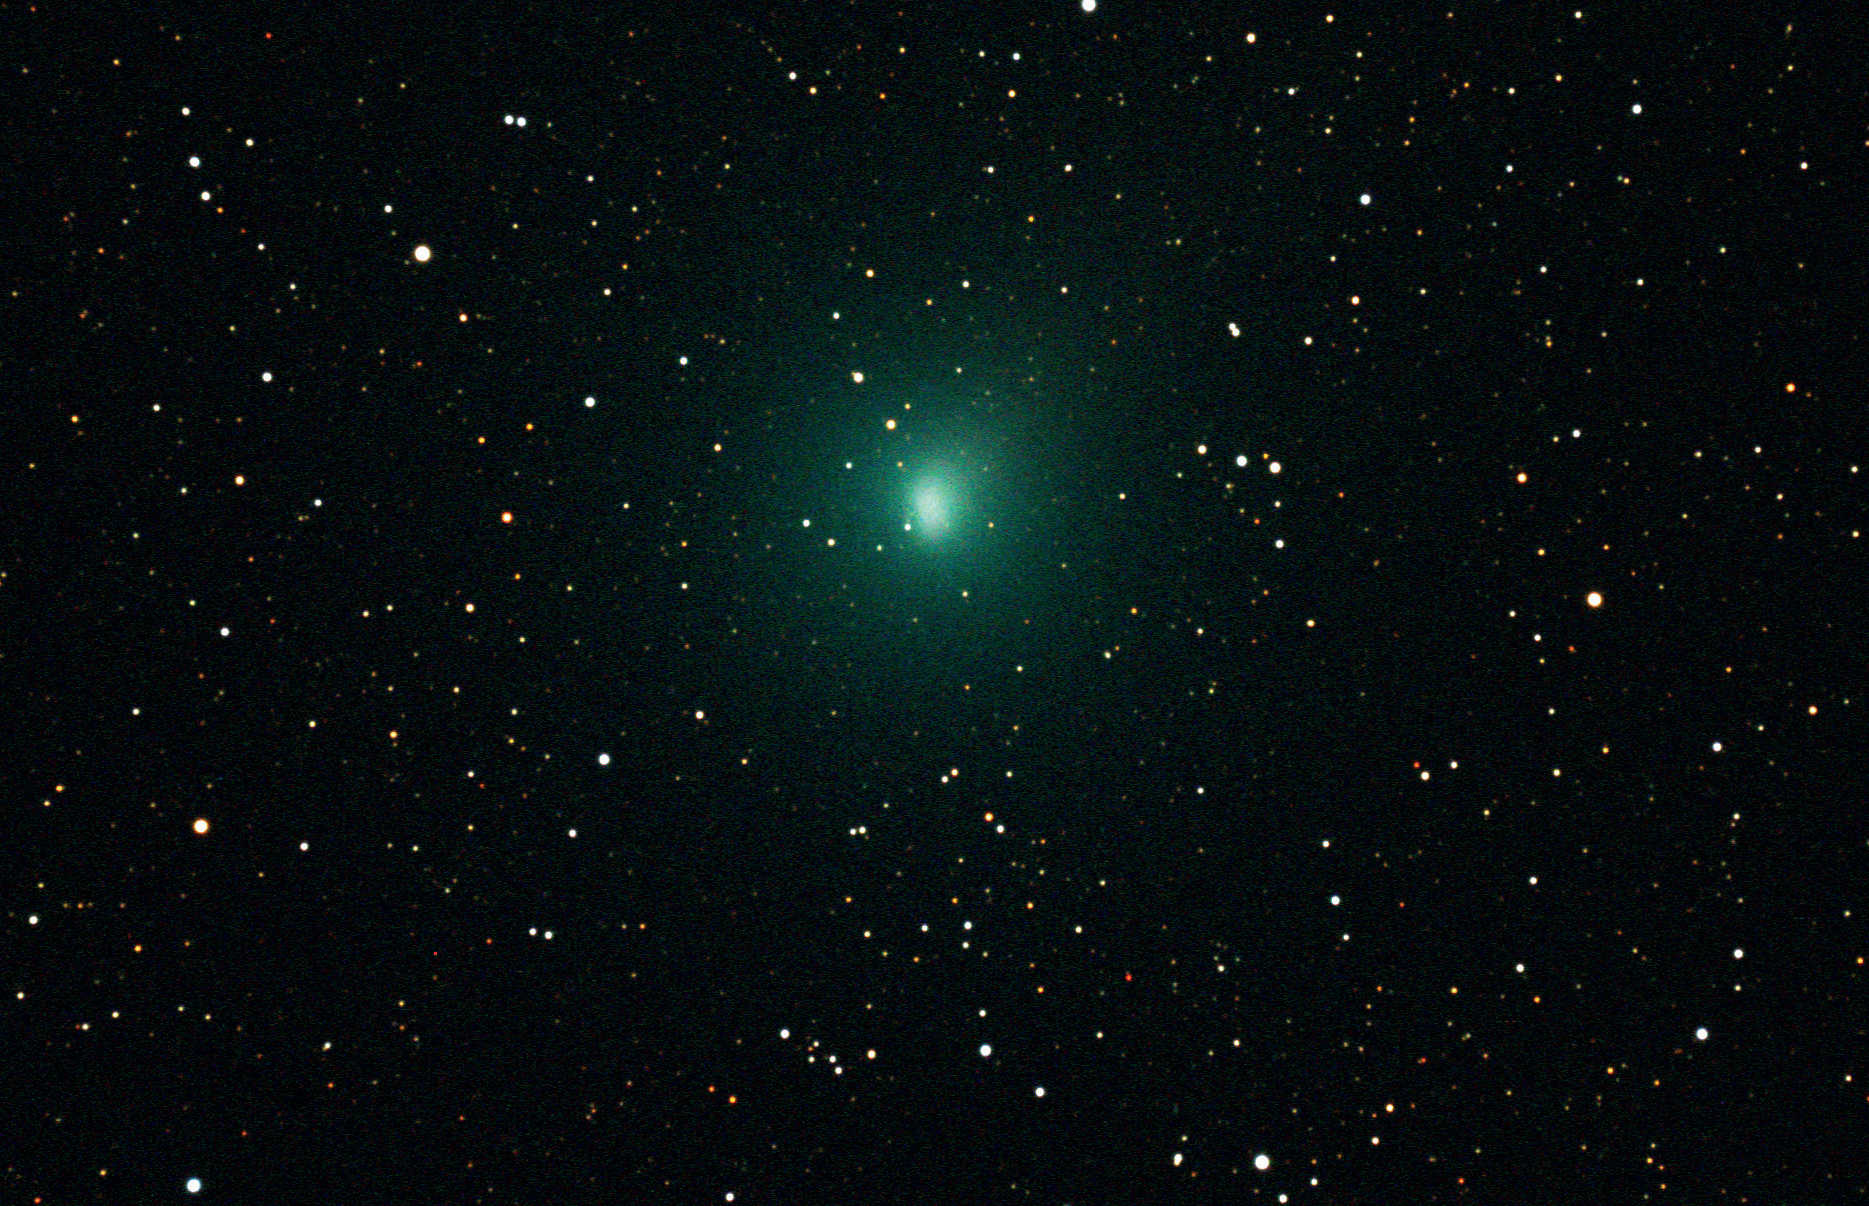 ... albo obraz stackowany jest na gwiazdy tak, że są one punktami, natomiast głowa komety jest mniej ostro zarysowana. Surowe dane zostały zebrane 11.10.2010 za pomocą chłodzonej kamery CCD SBIG ST-4000XCM na Takahashi TOA-130. Obraz sumaryczny składa się z ośmiu pojedynczych klatek o czasie naświetlania 120 sekund każda.